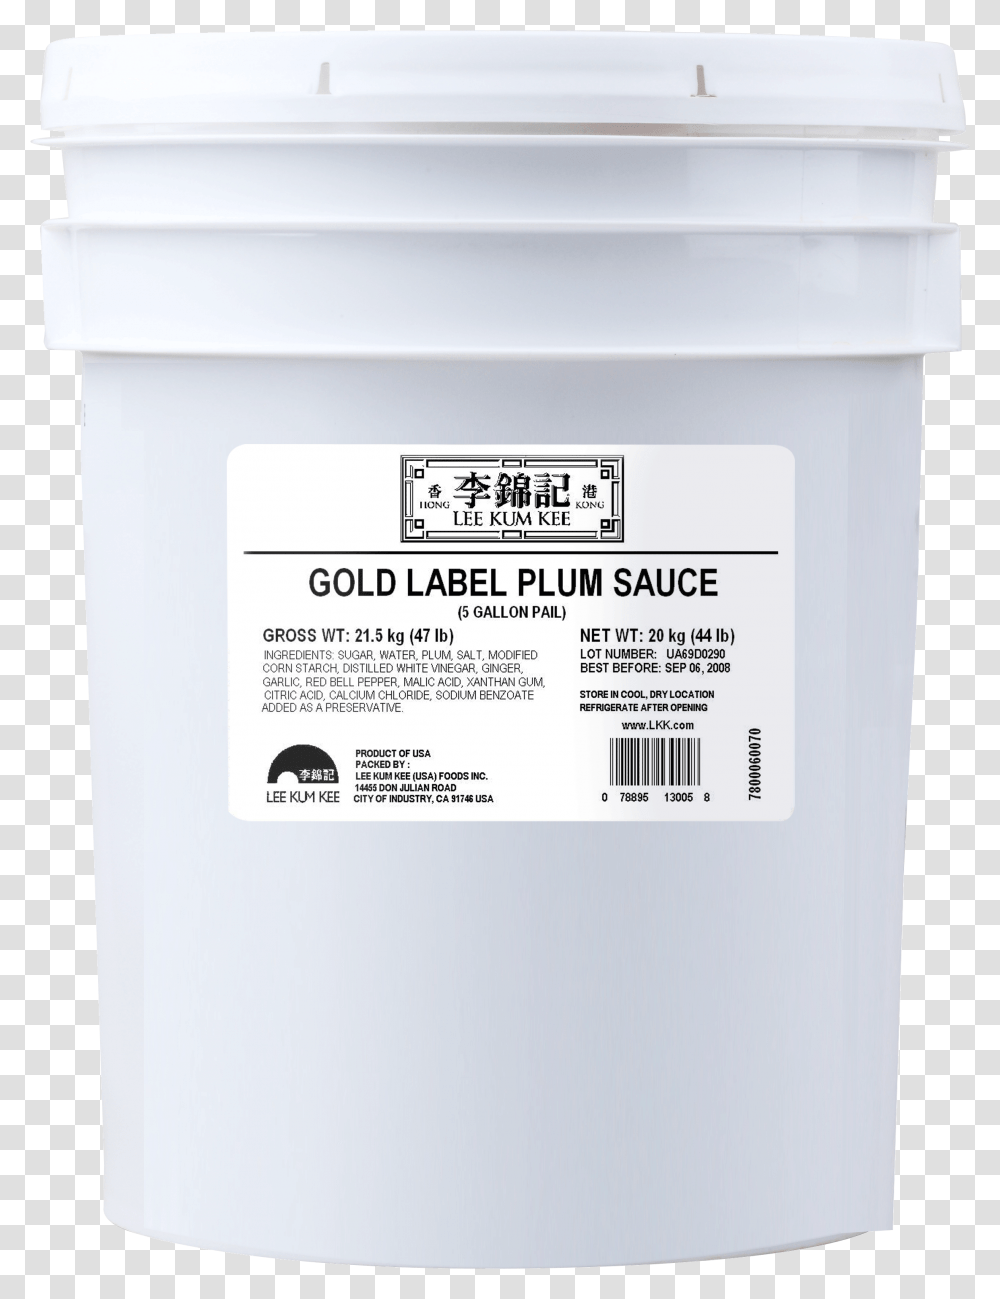 Gold Label Plum 20kg, Mailbox, Letterbox, Computer Transparent Png